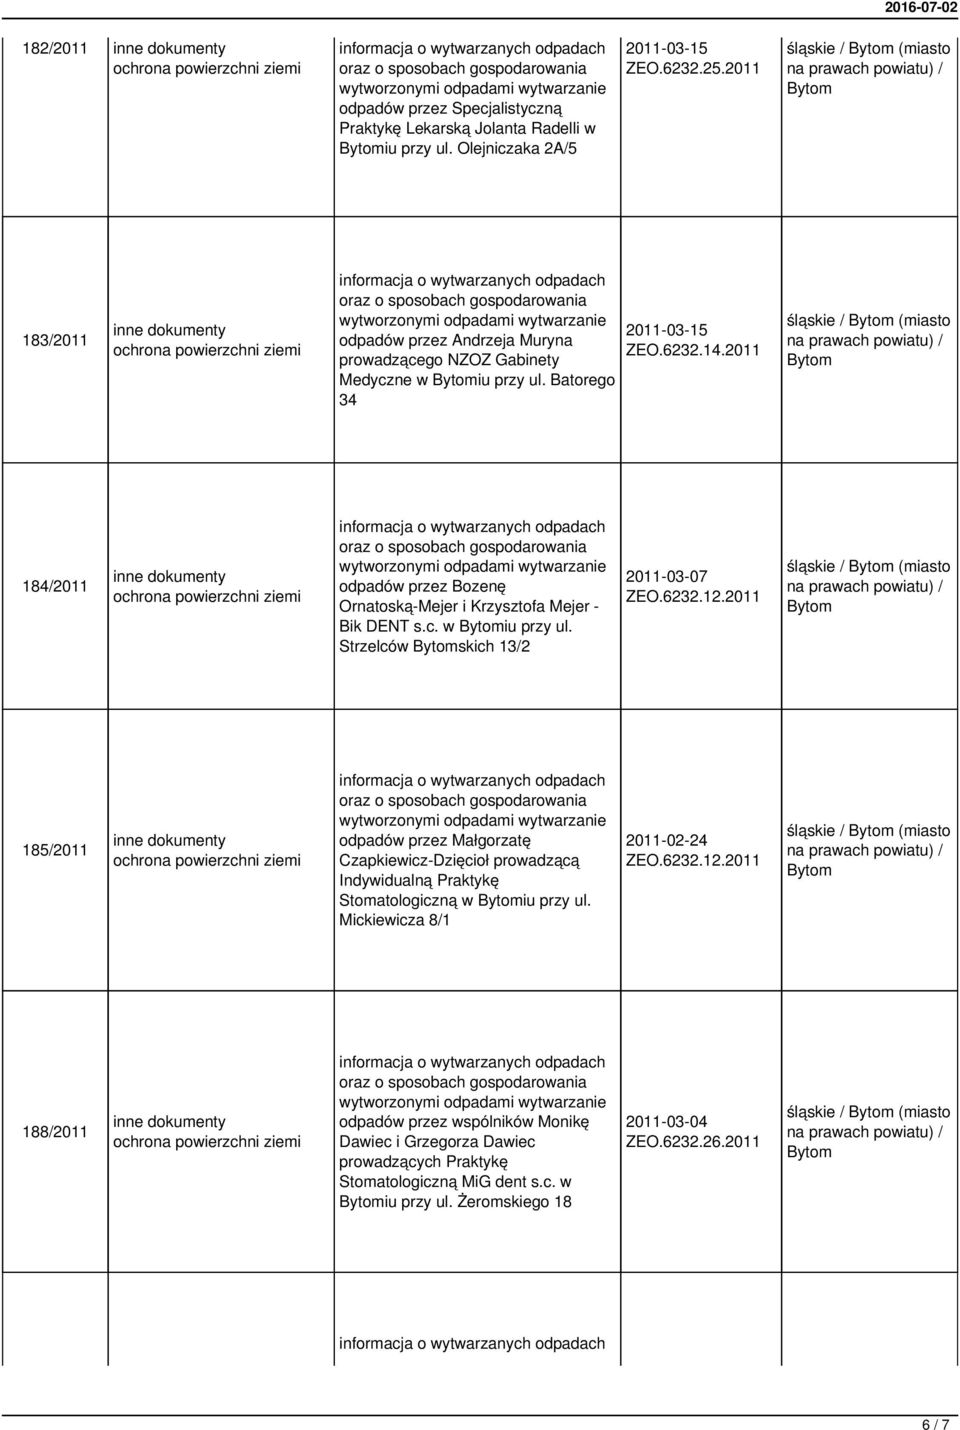 2011 184/2011 wytwarzanie odpadów przez Bozenę Ornatoską-Mejer i Krzysztofa Mejer - Bik DENT s.c. w iu przy ul. Strzelców skich 13/2 2011-03-07 ZEO.6232.12.